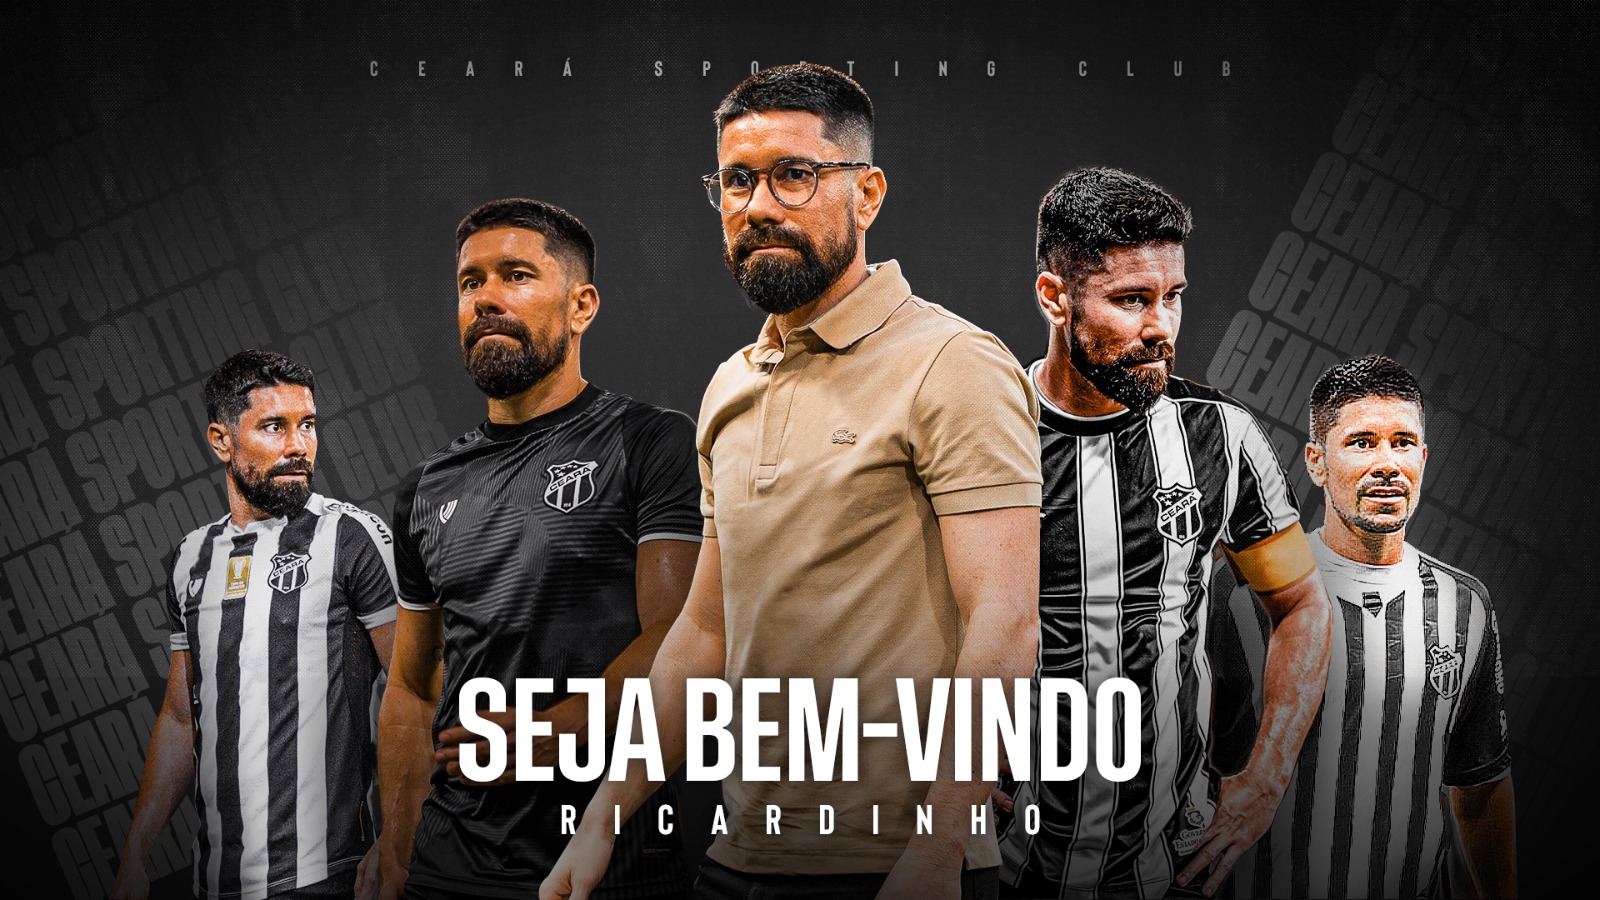 Ídolo Alvinegro, Ricardinho é o novo Assessor de Futebol do Ceará